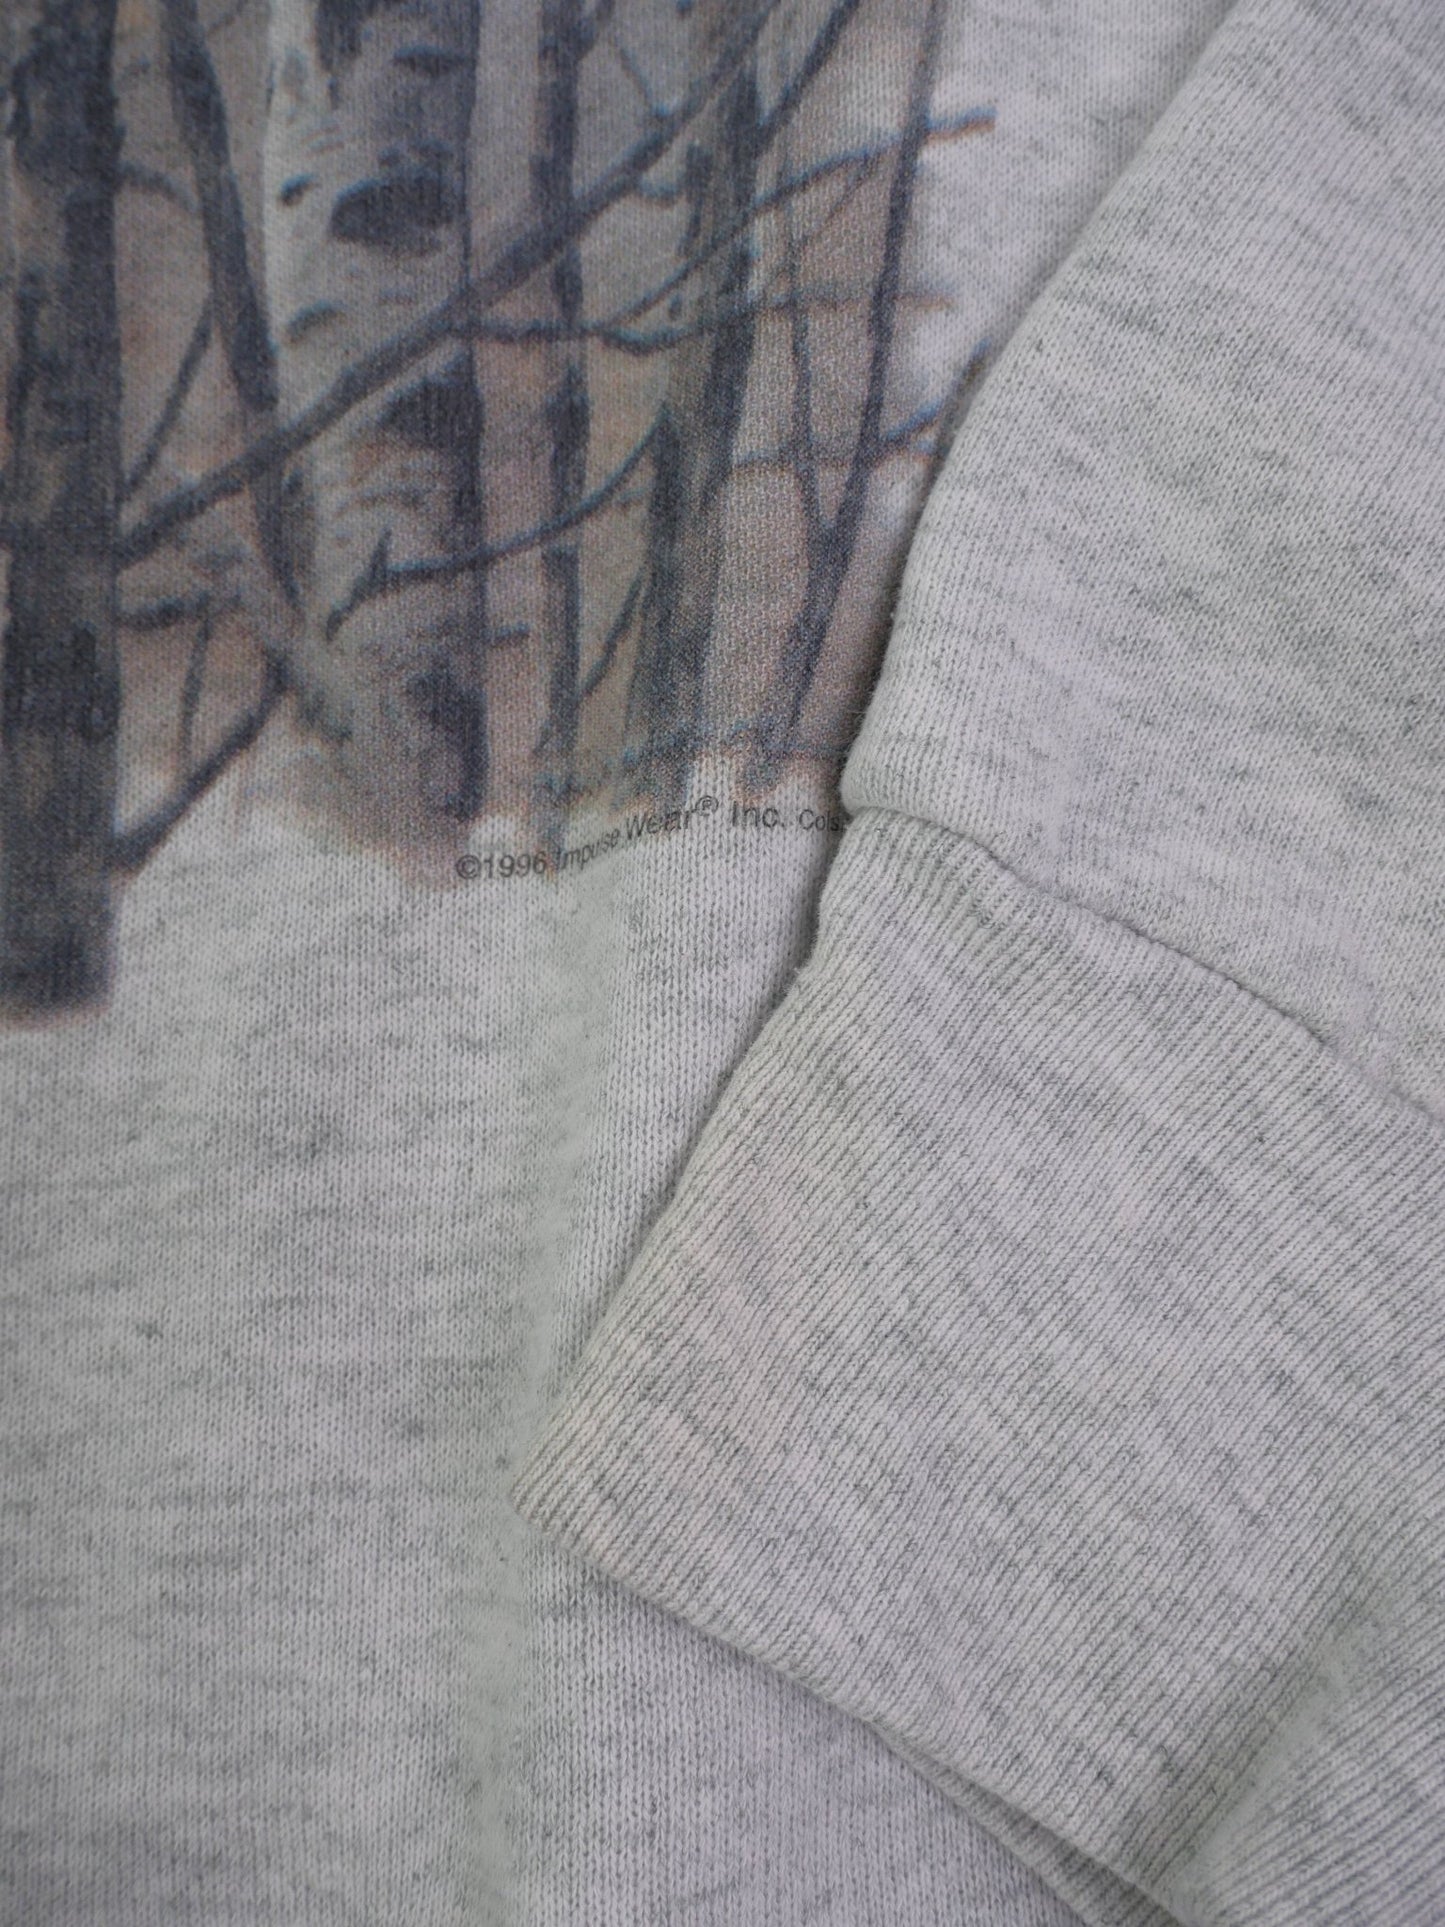 Deer printed Graphic grey Vintage Sweater - Peeces